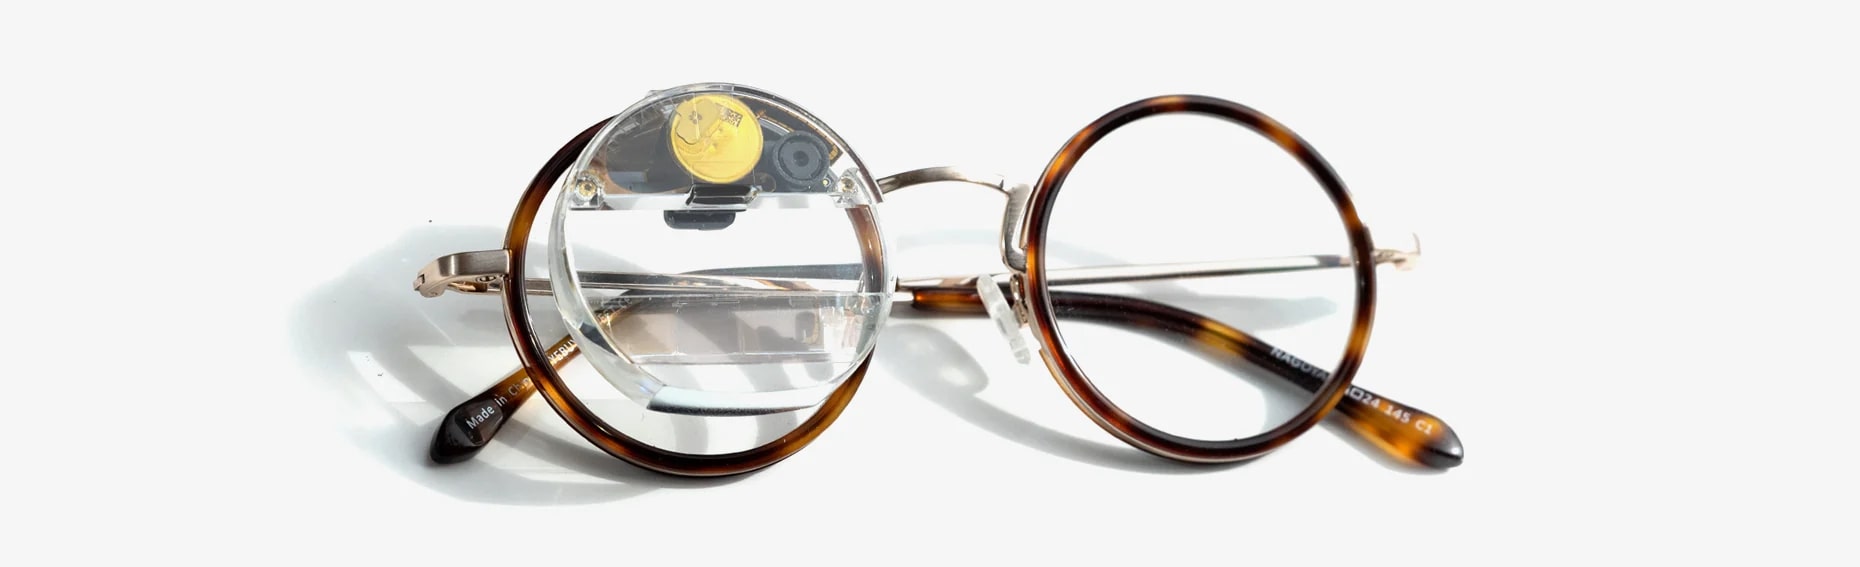 メガネに取り付け可能なARデバイス「Monocle（モノクル）」が発売─ユーザーが自由に機能拡張、価格は4万5800円 